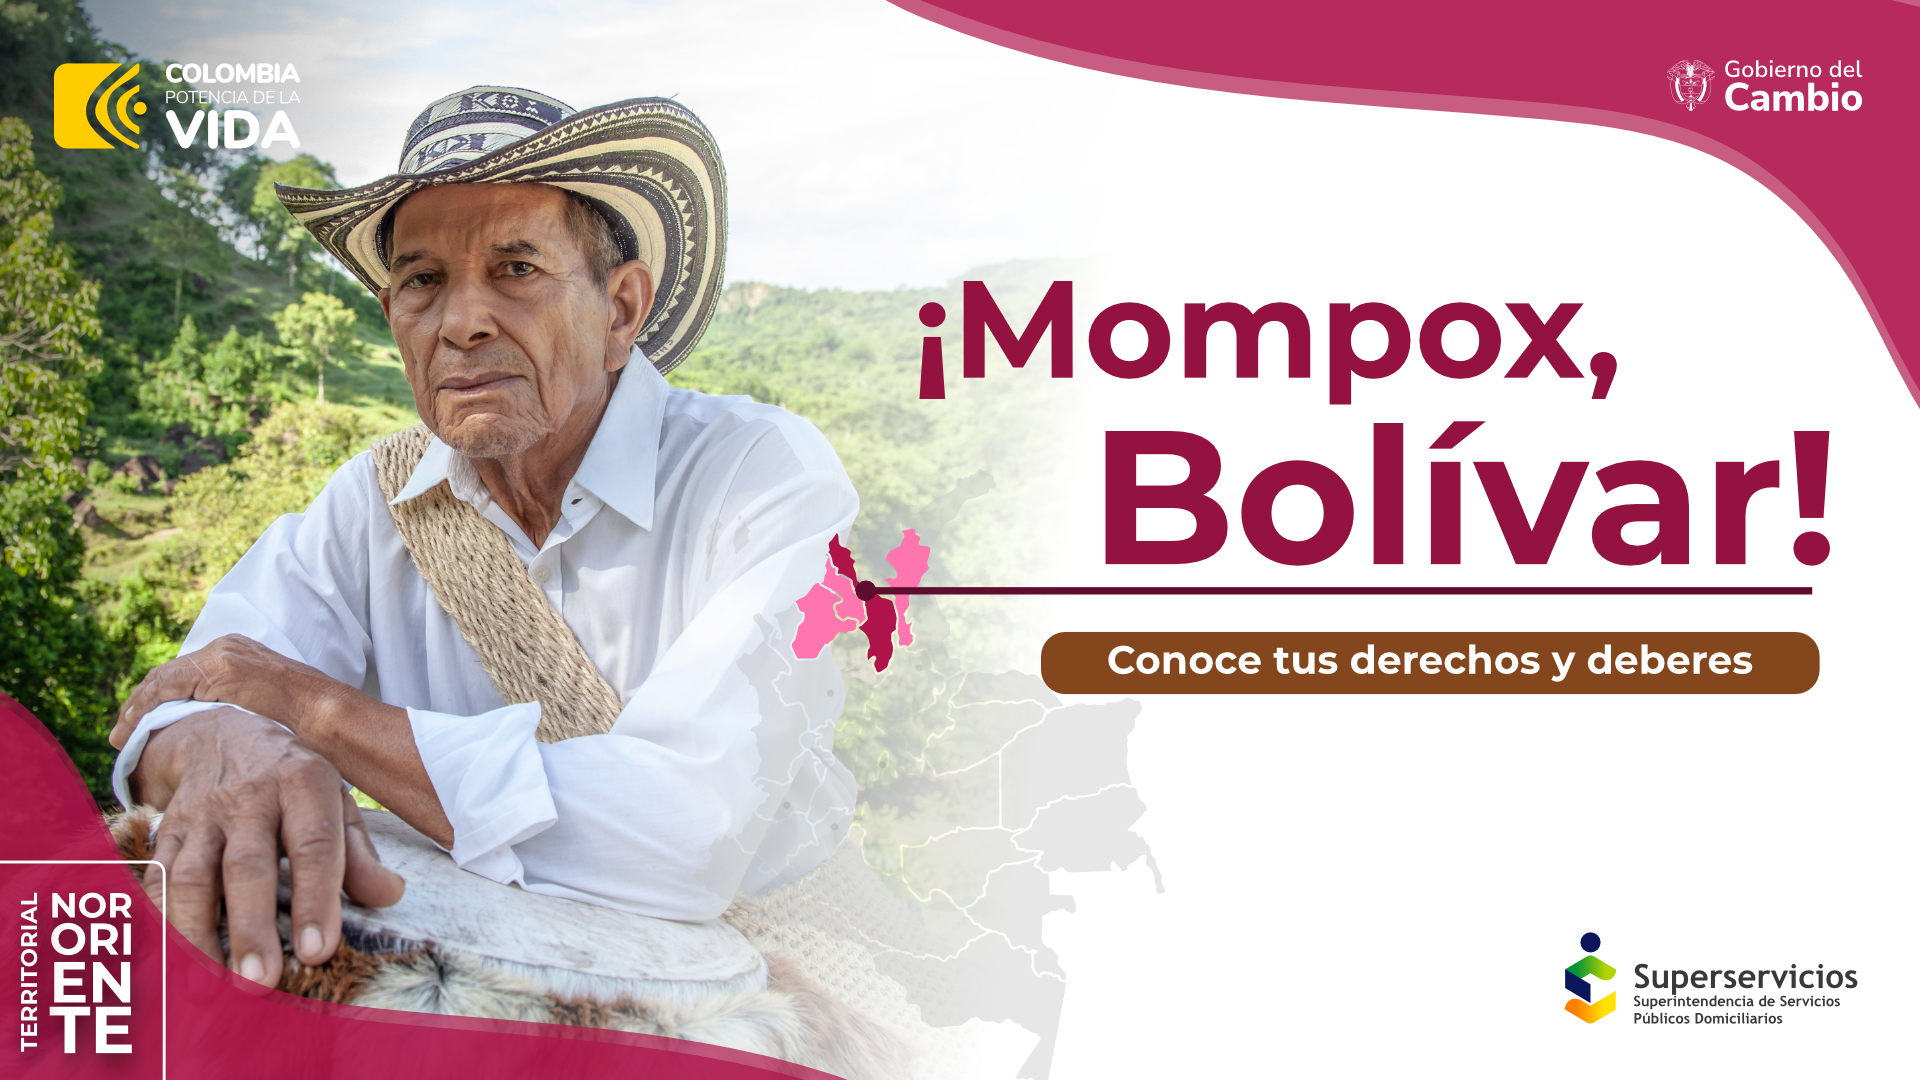 Conoce tus derechos y deberes en Mompox, Bolívar. 
